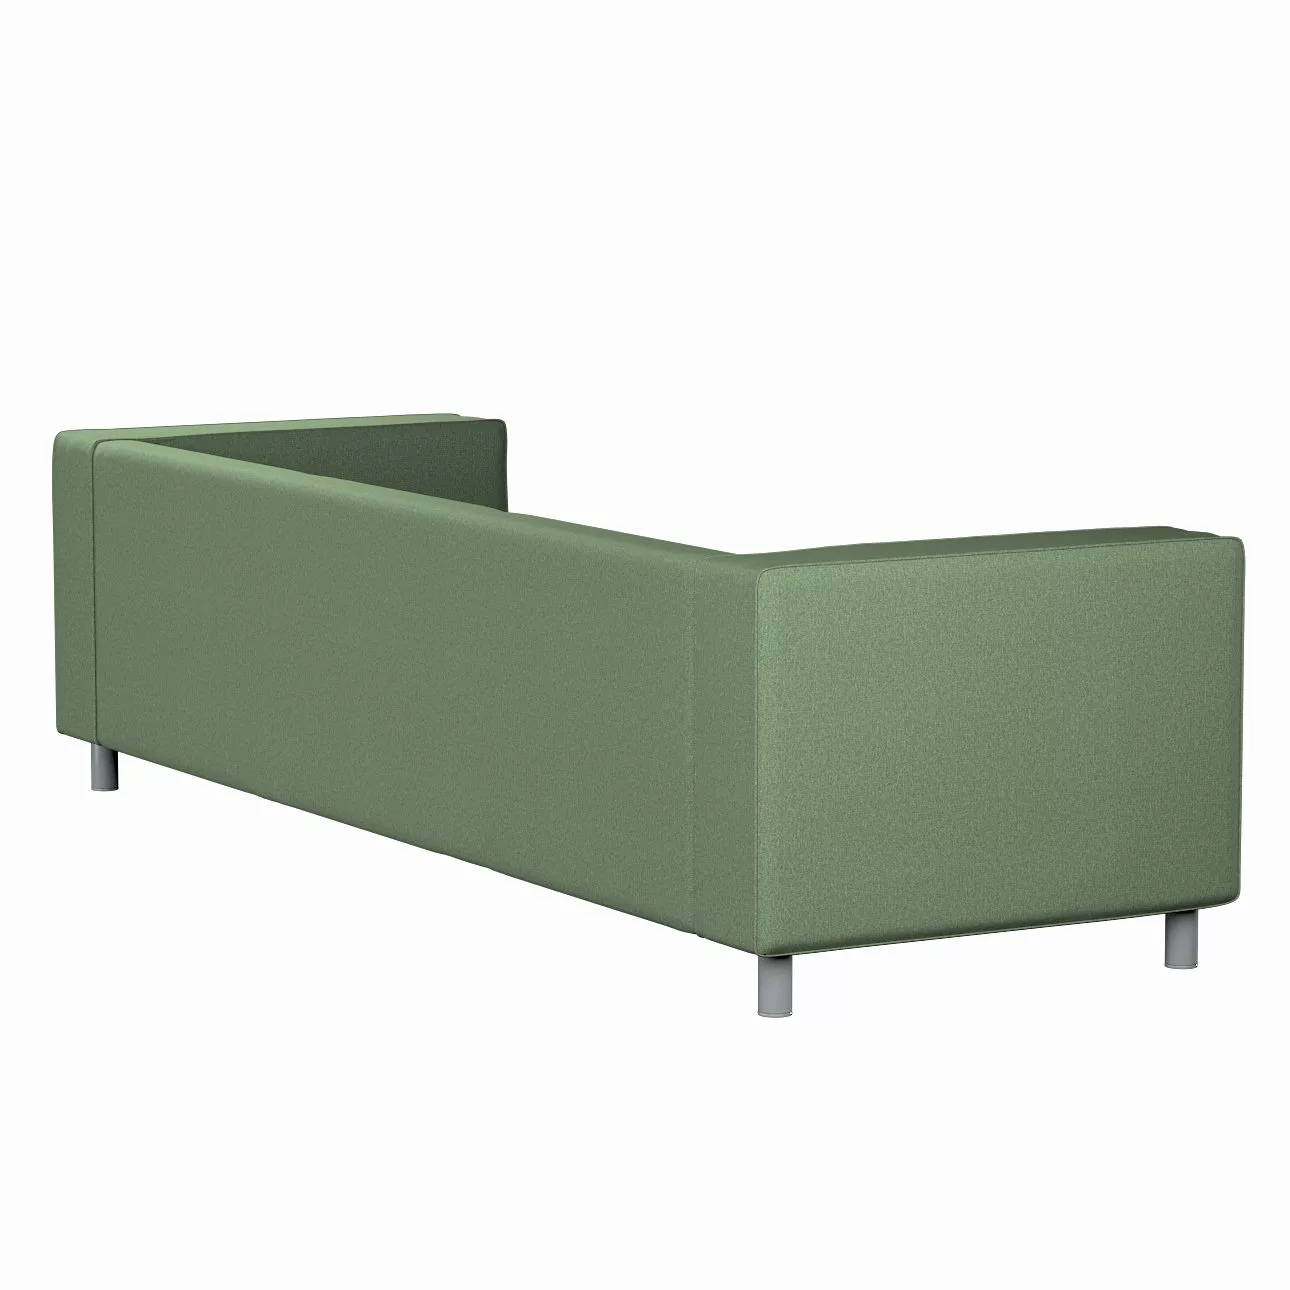 Bezug für Klippan 4-Sitzer Sofa, grün, Bezug für Klippan 4-Sitzer, Amsterda günstig online kaufen